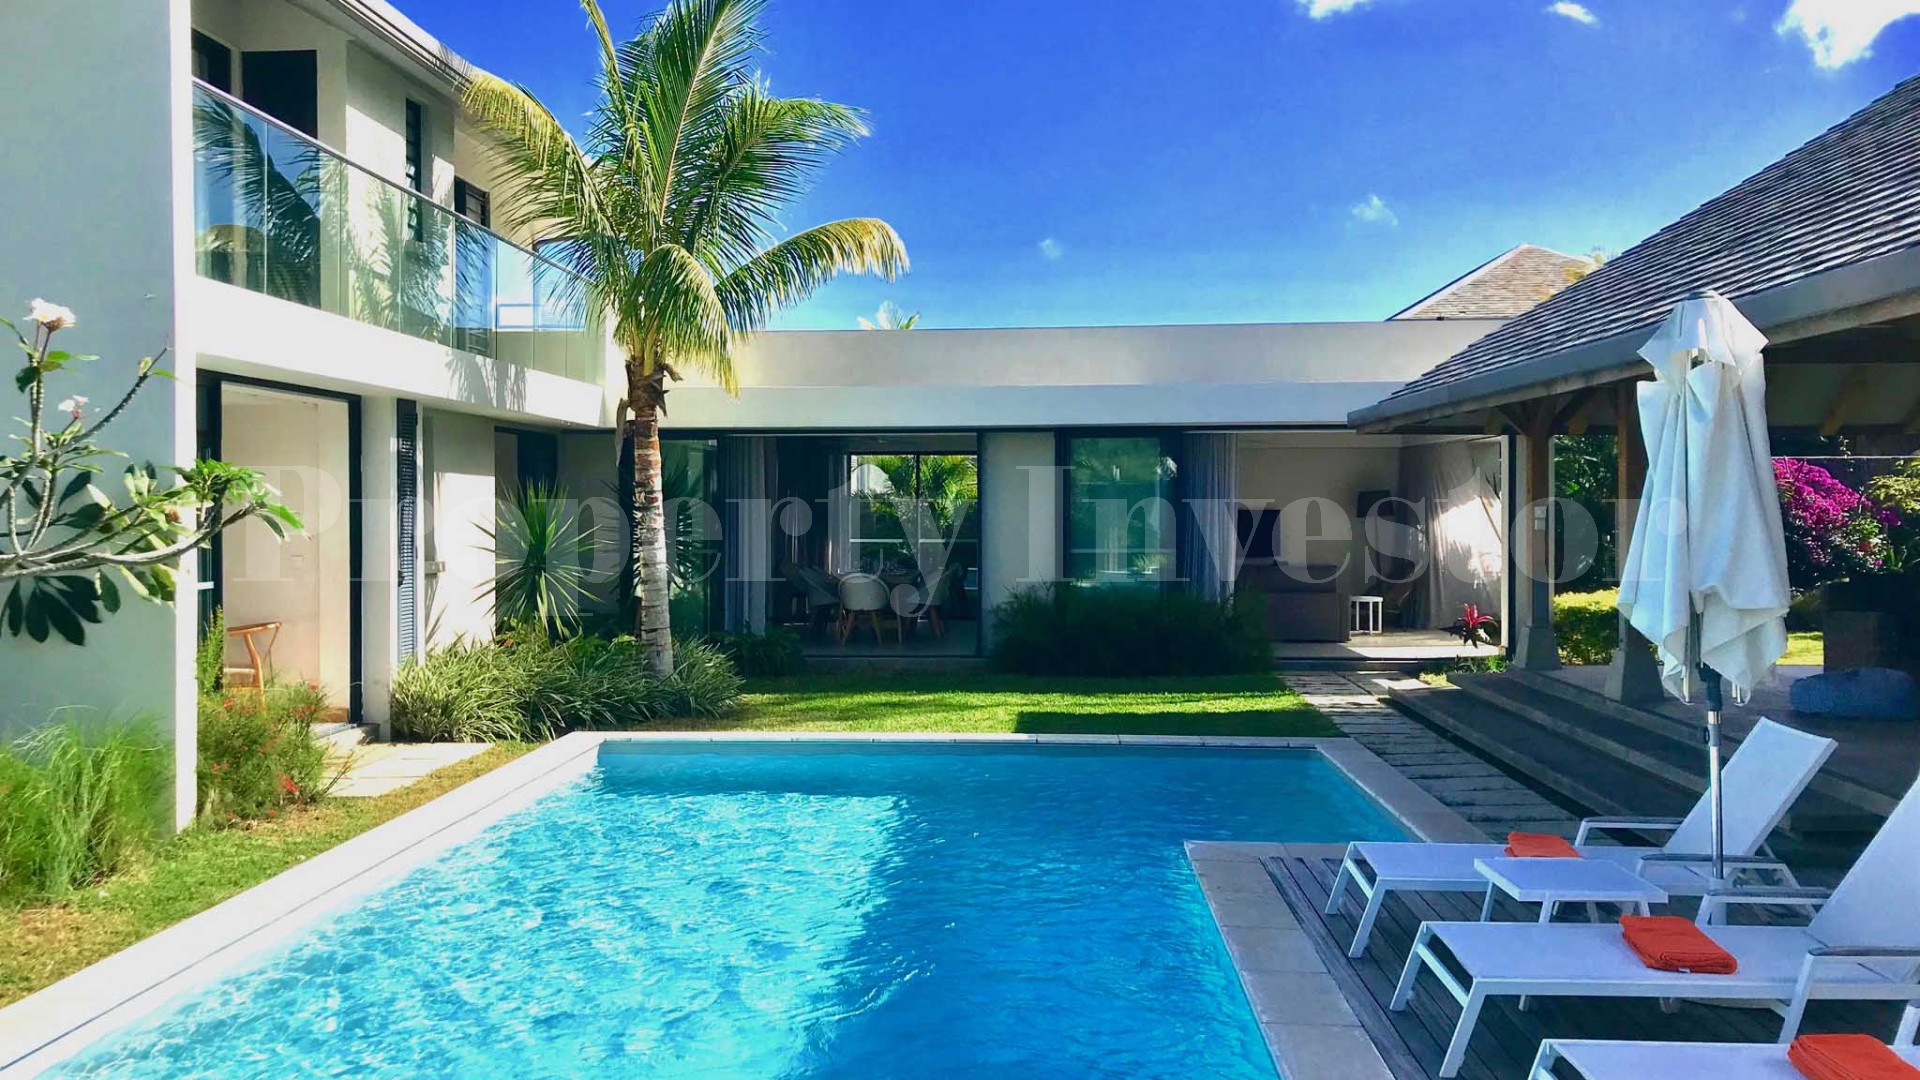 4 Bedroom Villa in Mauritius (Villa 34)